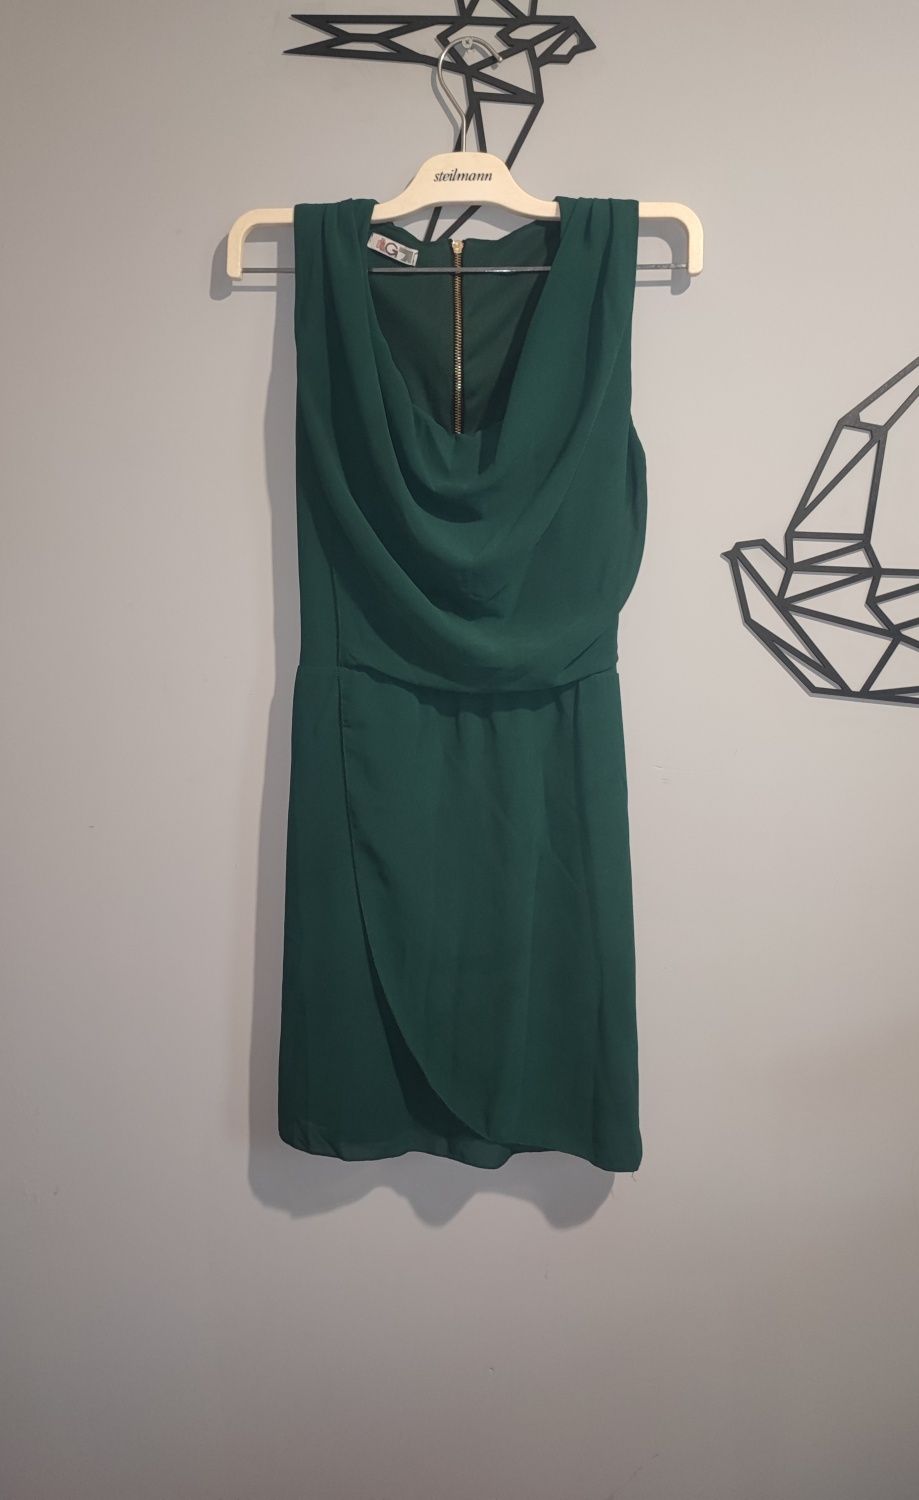 Zielona sukienka z wiązaniem WalG S